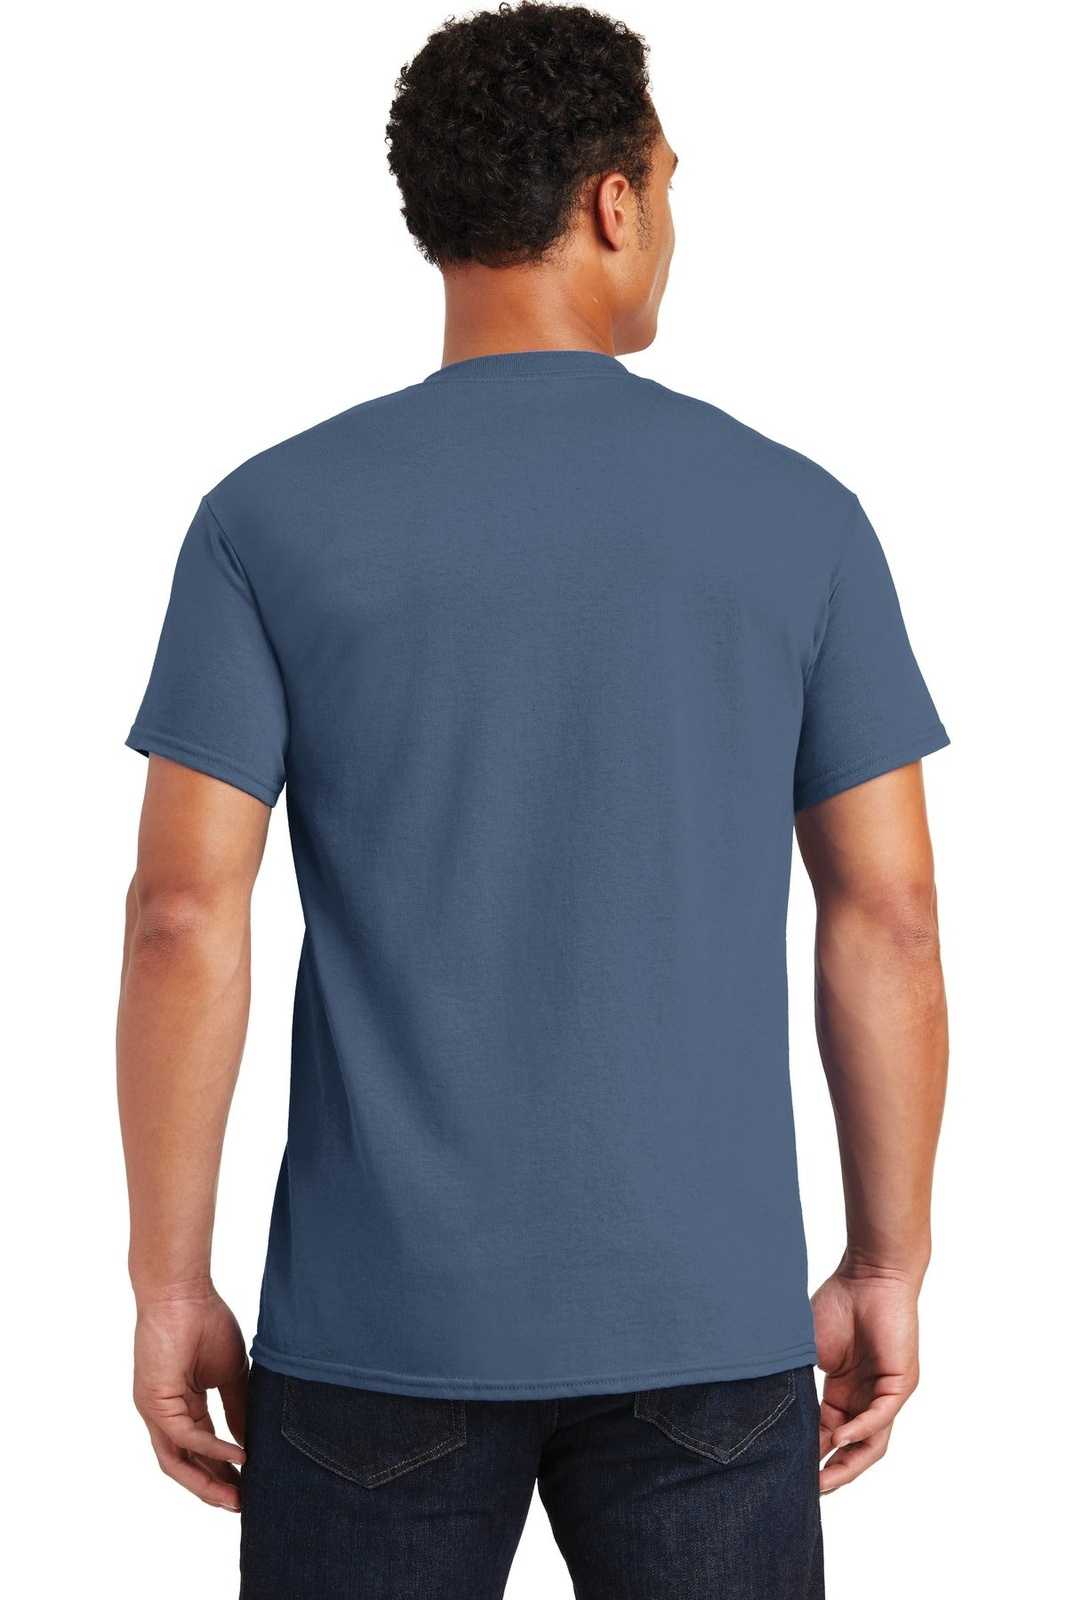 Gildan 2000 Ultra Cotton 100% Cotton T-Shirt - Indigo Blue - HIT a Double